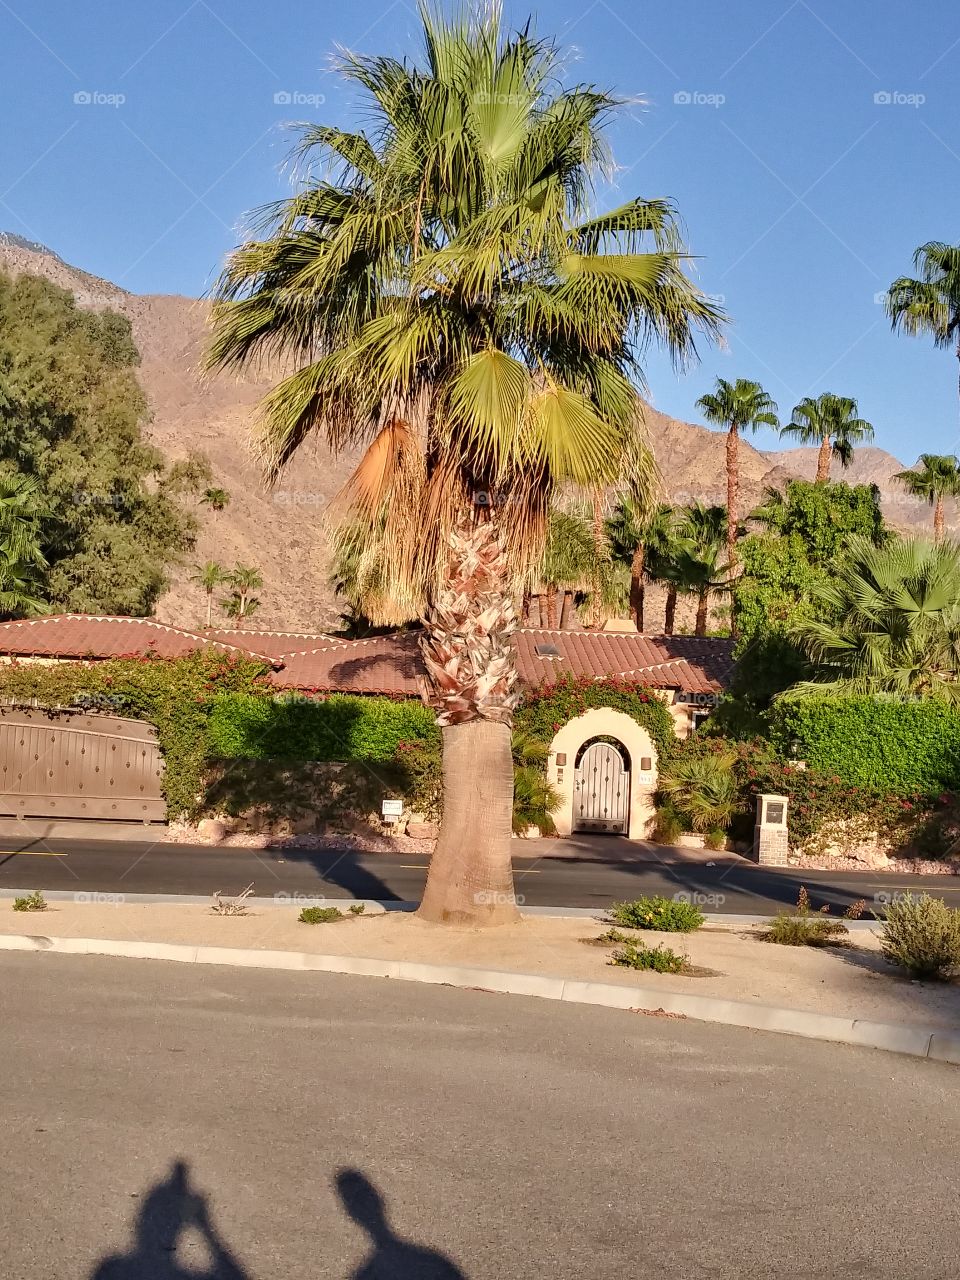 palm Tree